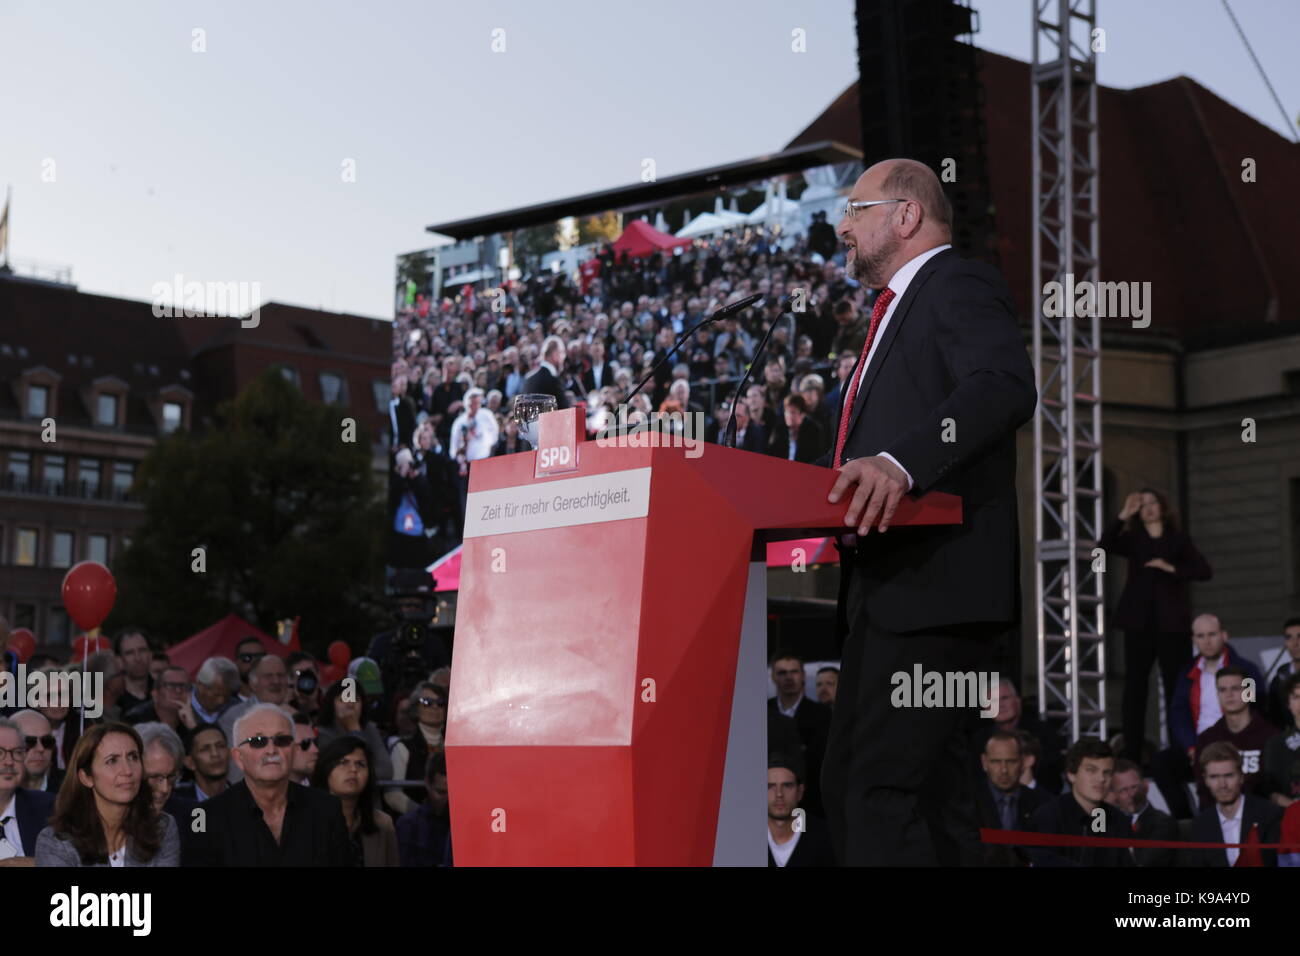 Berlín, Alemania. 22 Sep, 2017. Martin Schulz aborda el rallye. El candidato para el Rectorado alemán del SPD (Partido Socialdemócrata de Alemania) fue el orador principal en una gran manifestación en el centro de Berlín, dos días antes de las elecciones generales alemanas. Crédito: Sopa de imágenes limitado/Alamy Live News Foto de stock